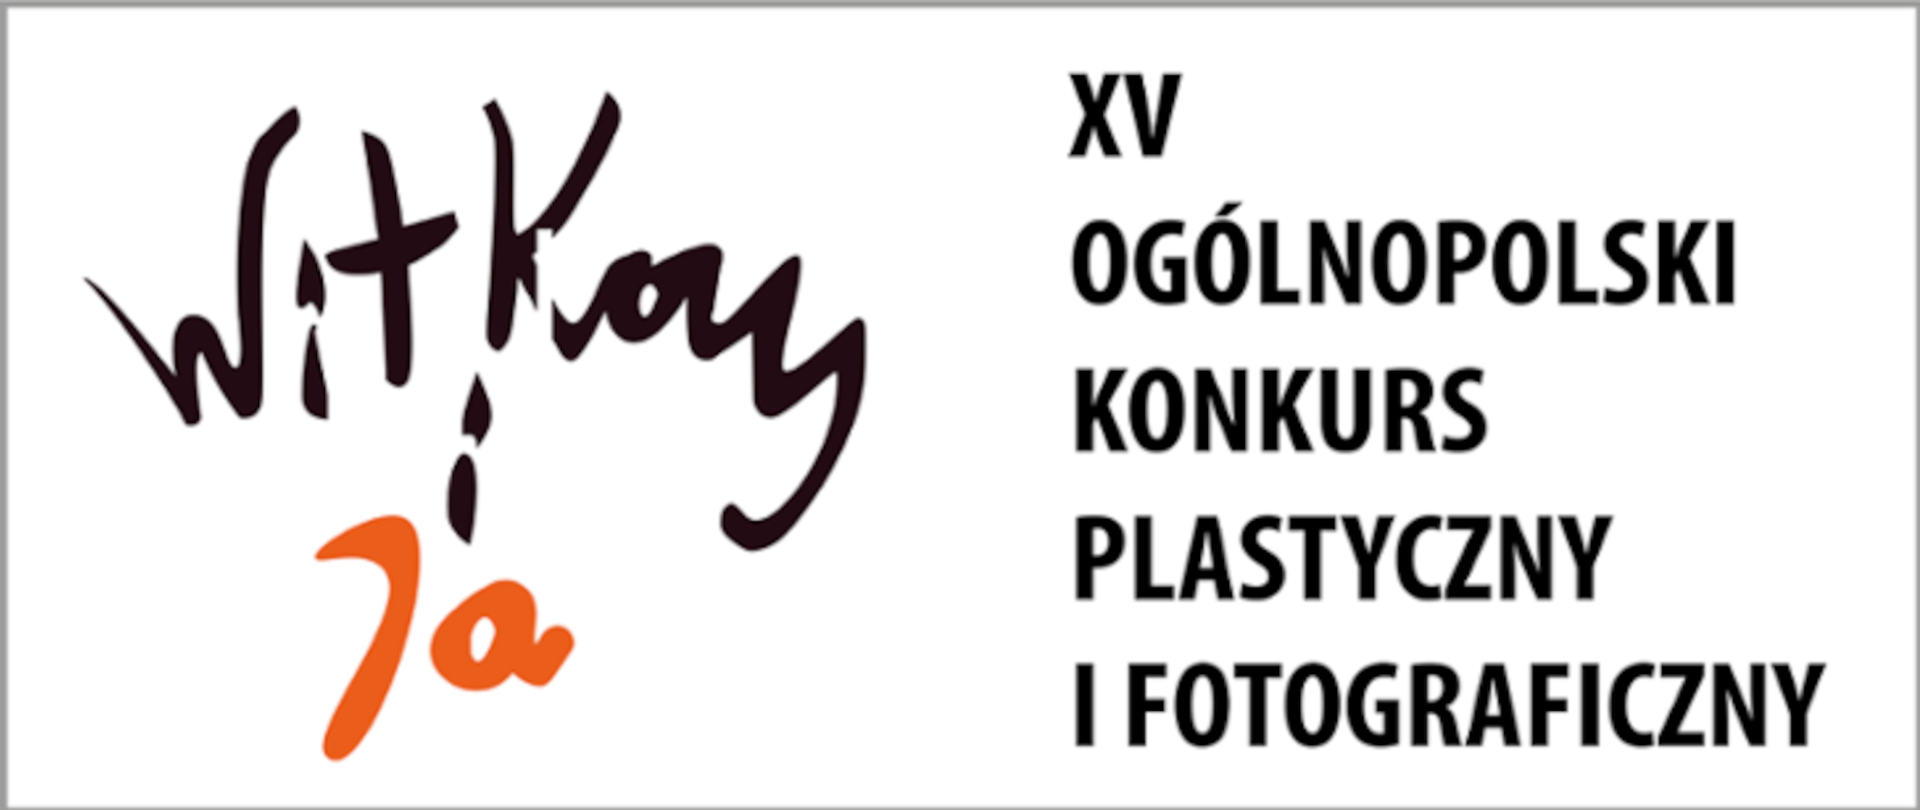 Na białym tle z lewej napis Witkacy i ja, z prawej napis XV Ogólnopolski Konkurs Plastyczny i Fotograficzny